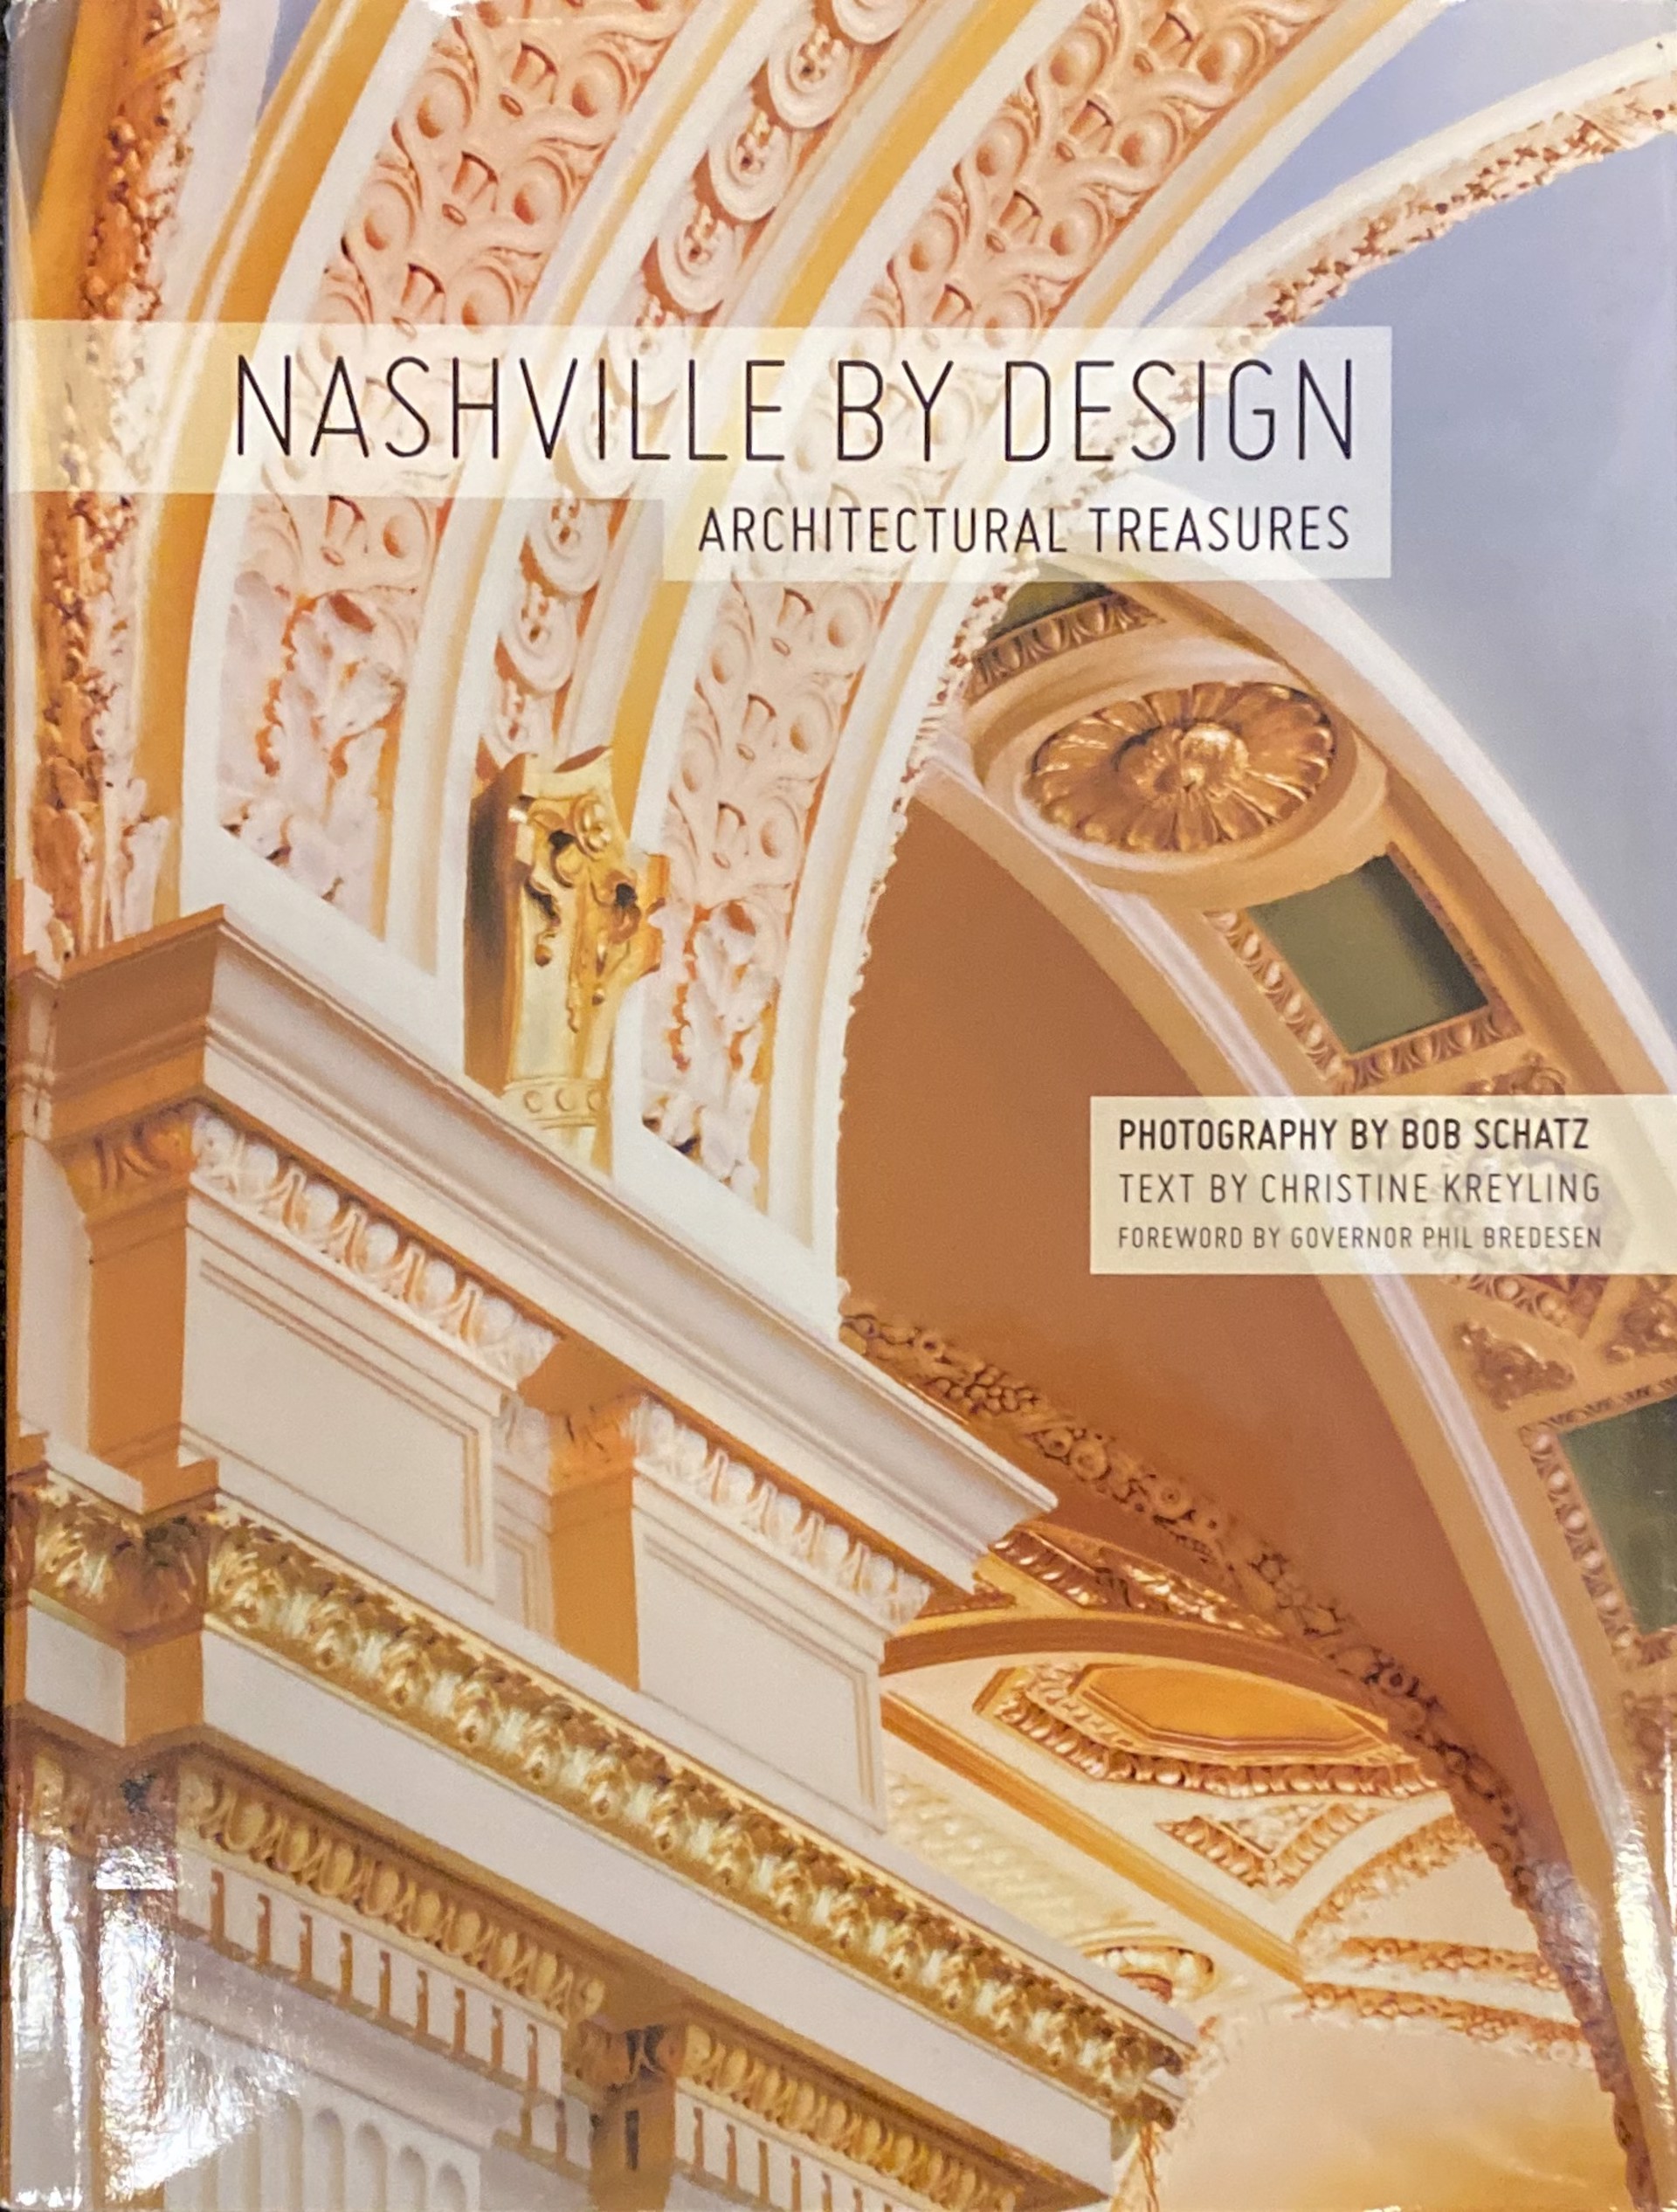 Nashville By Design by Bob Schatz